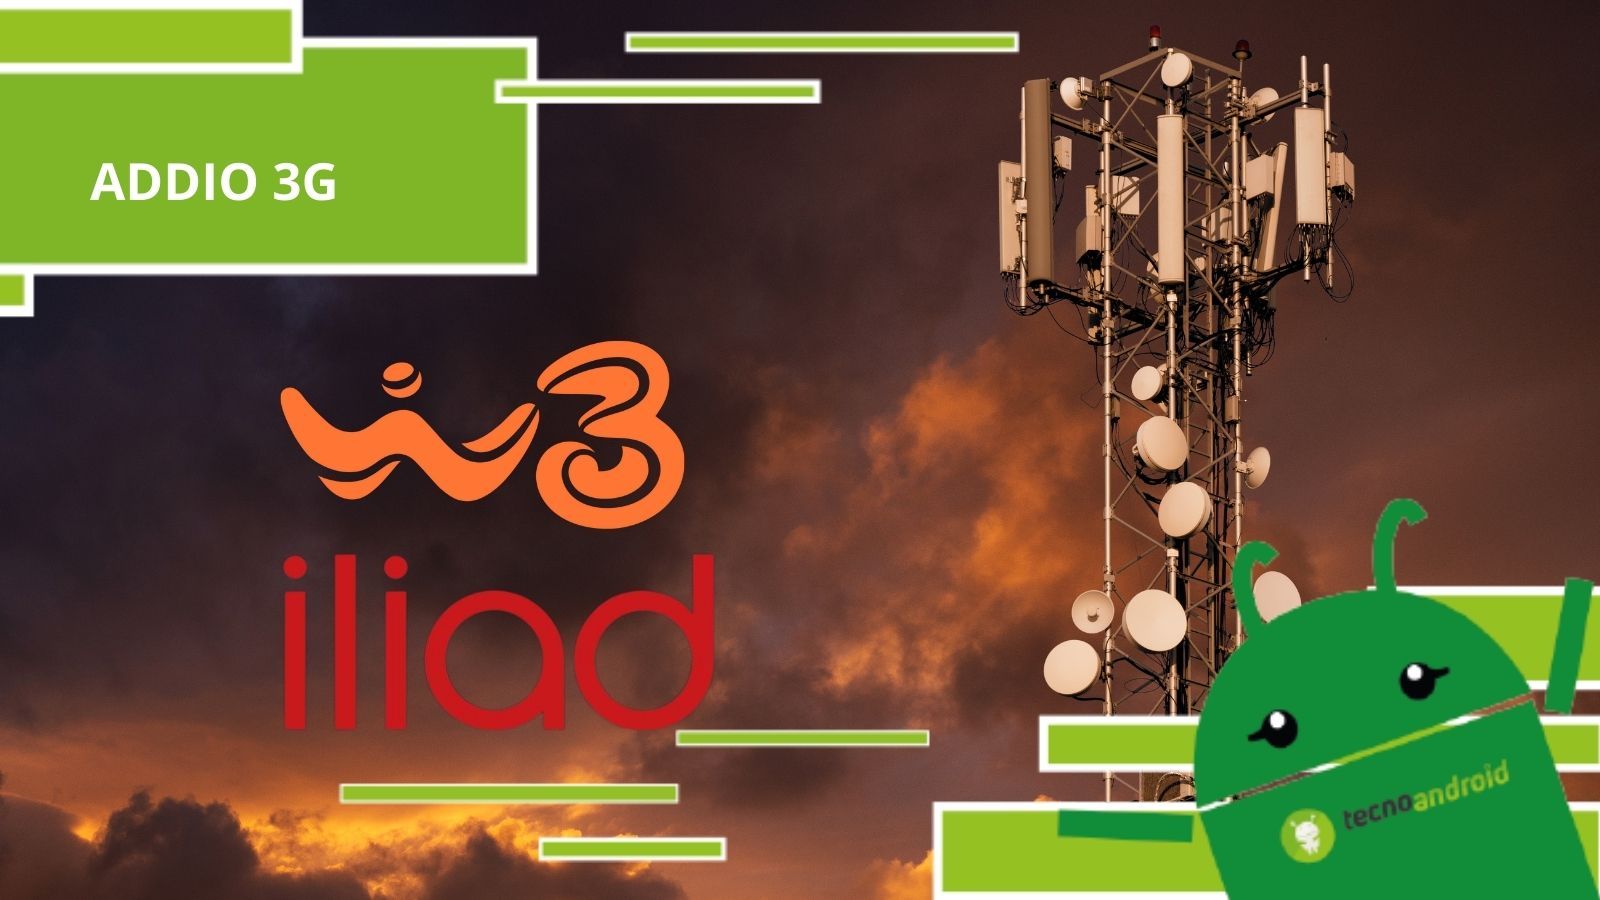 WindTre e Iliad, le due compagnie presto diranno addio al 3G